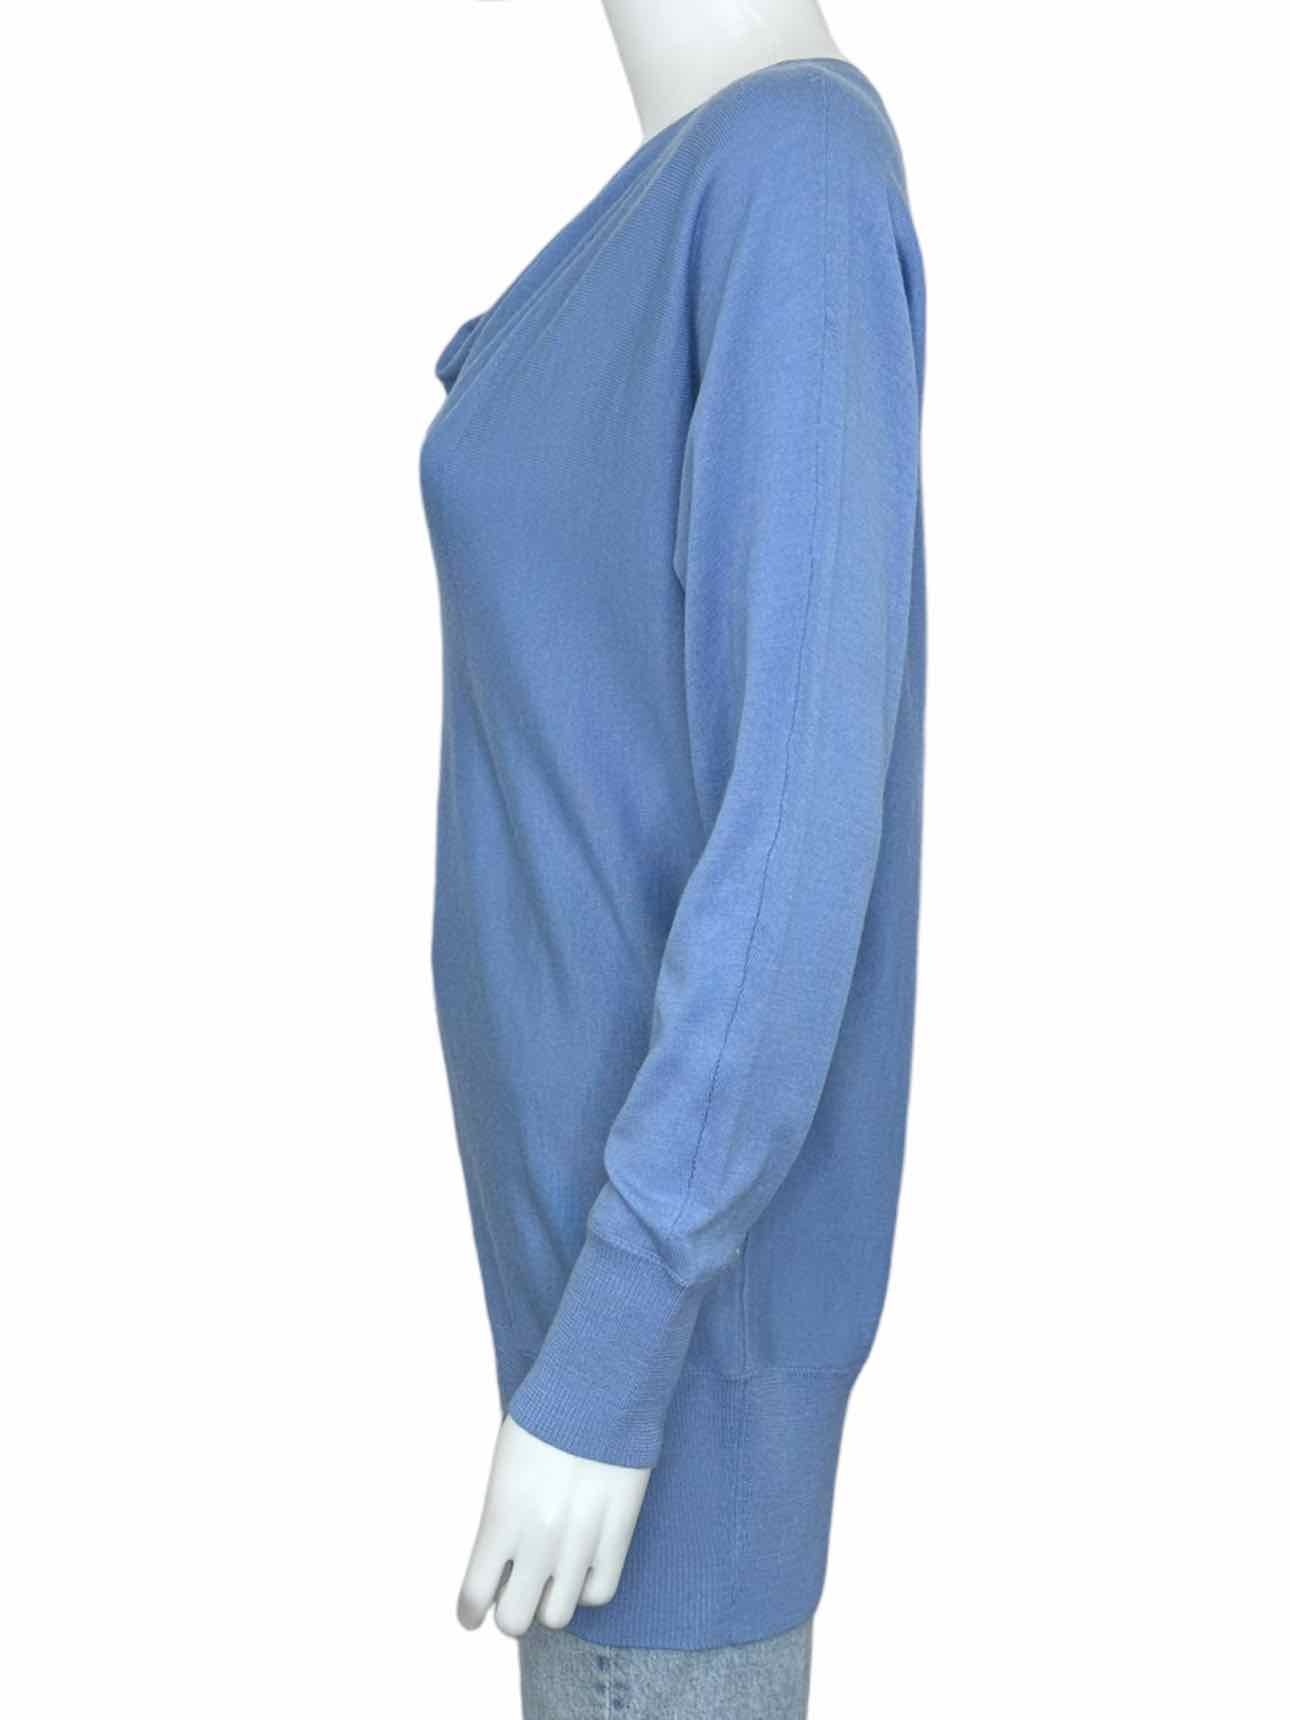 blue merino wool sweater